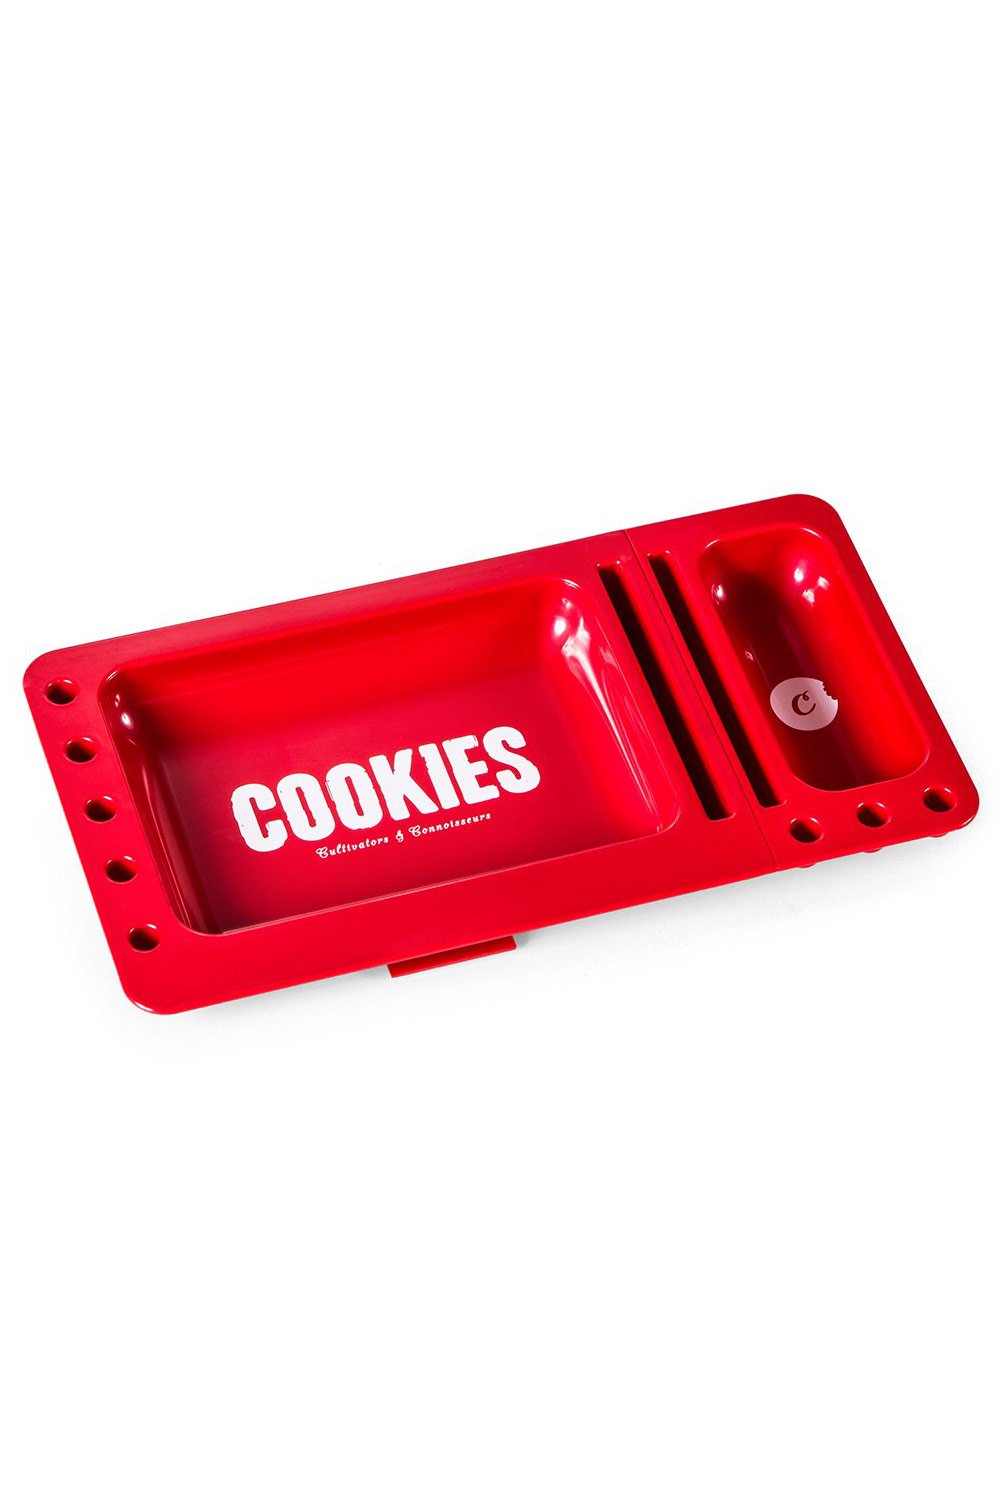  Cookies Accessories